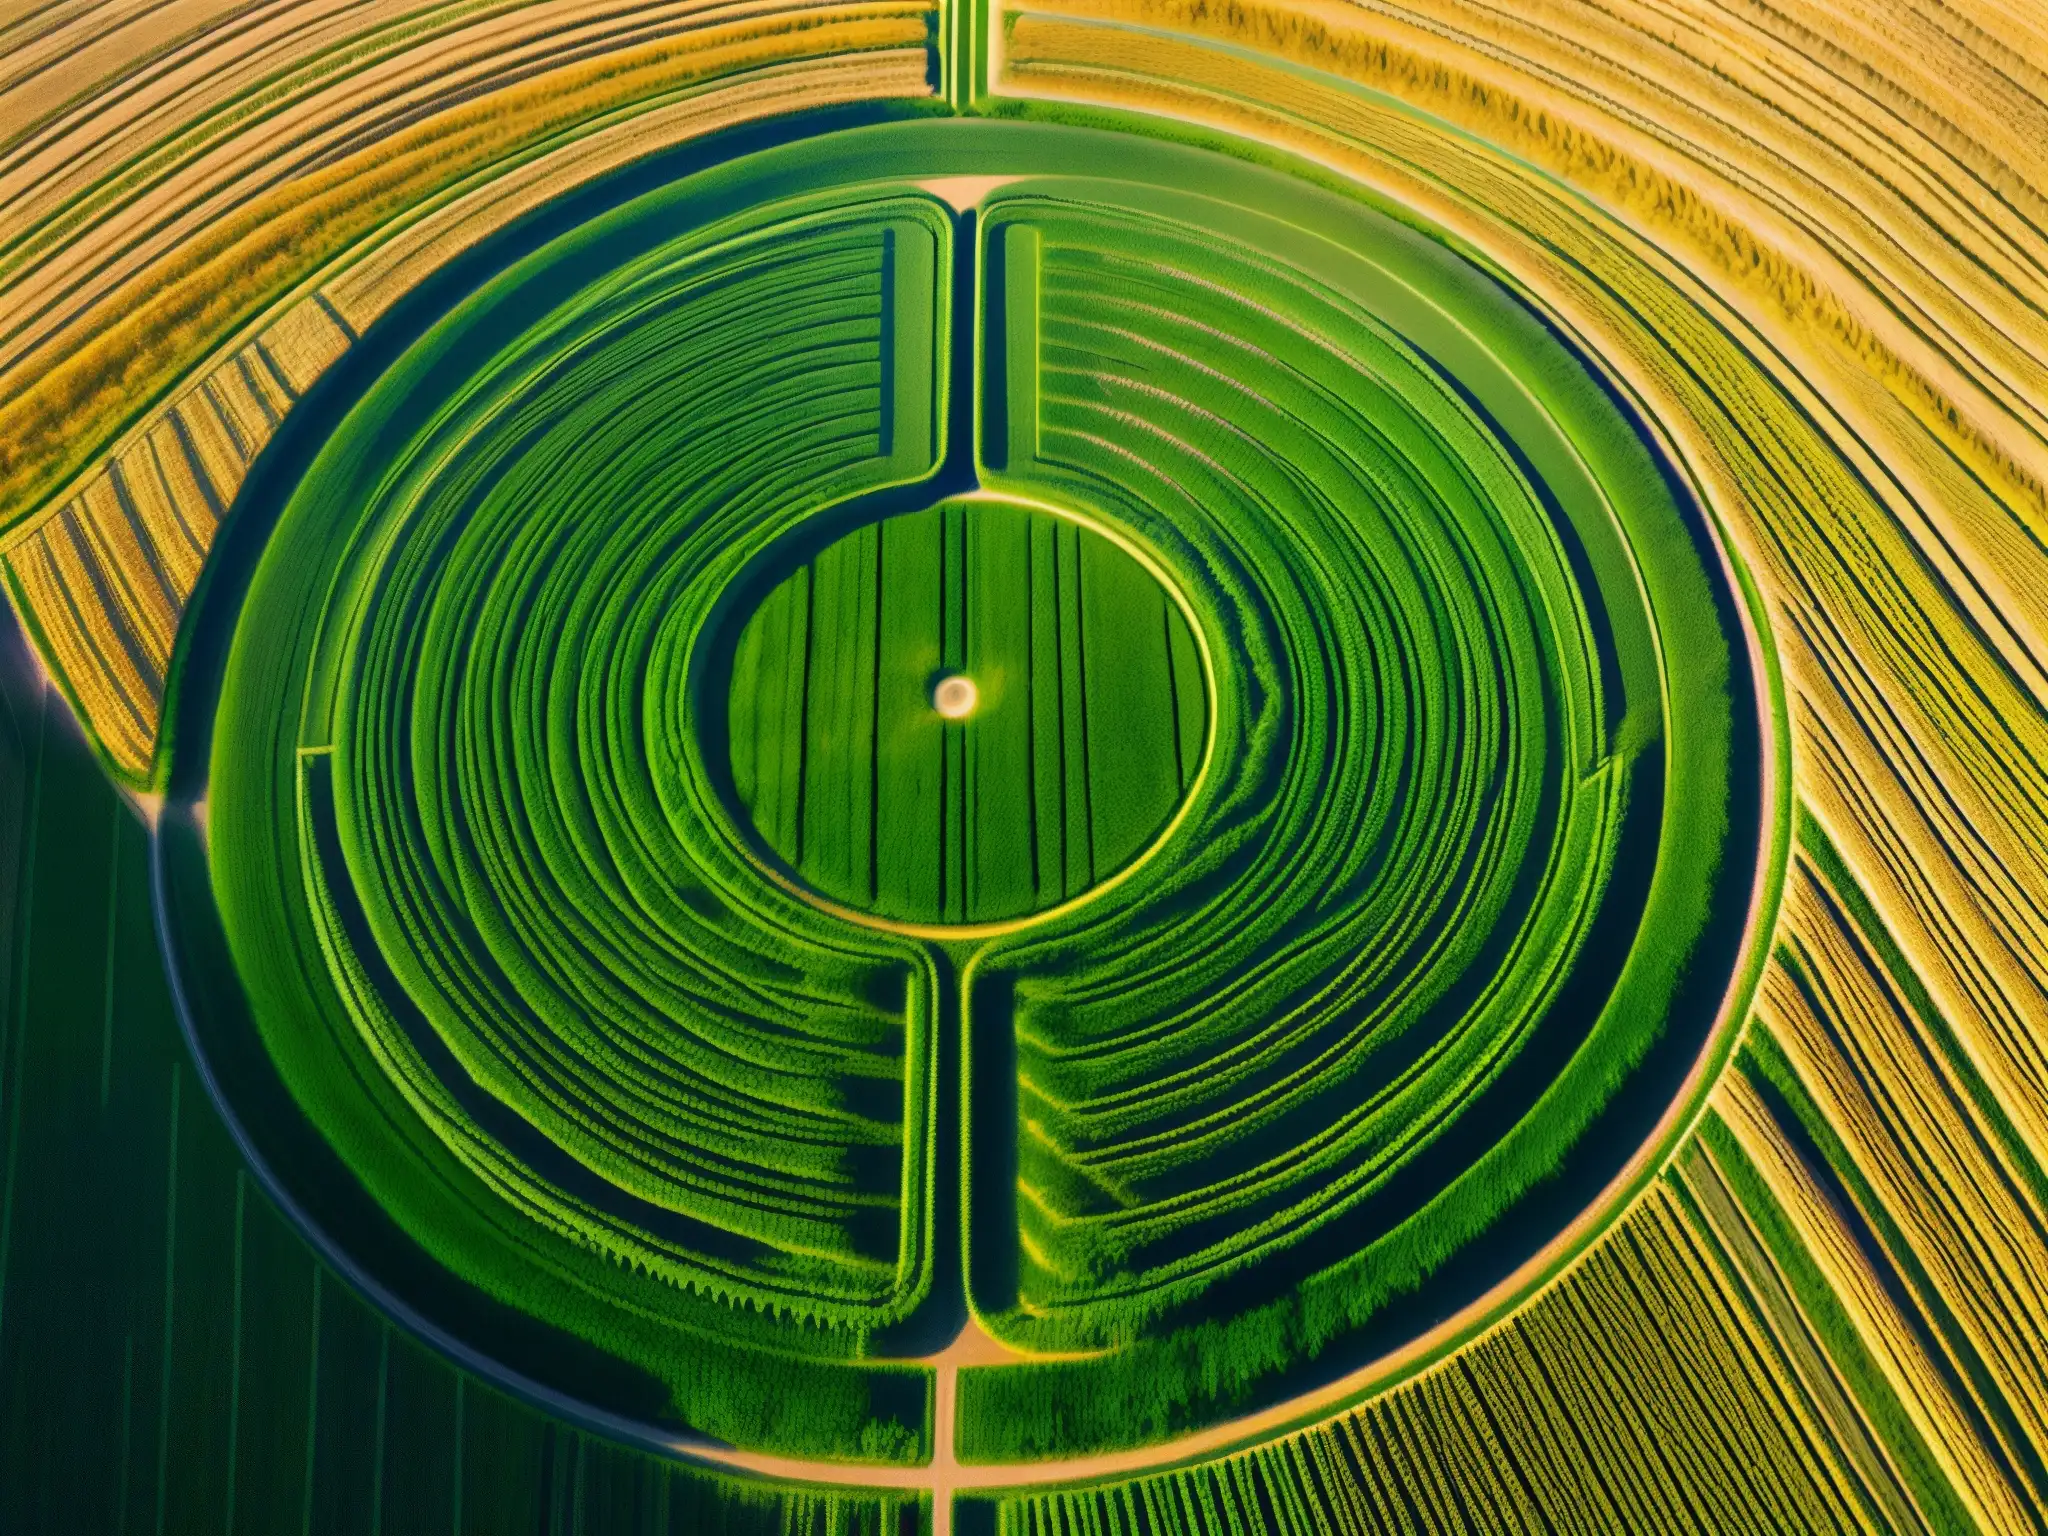 Espectacular círculo de las cosechas en un campo de trigo, con patrones geométricos precisos y exuberante vegetación